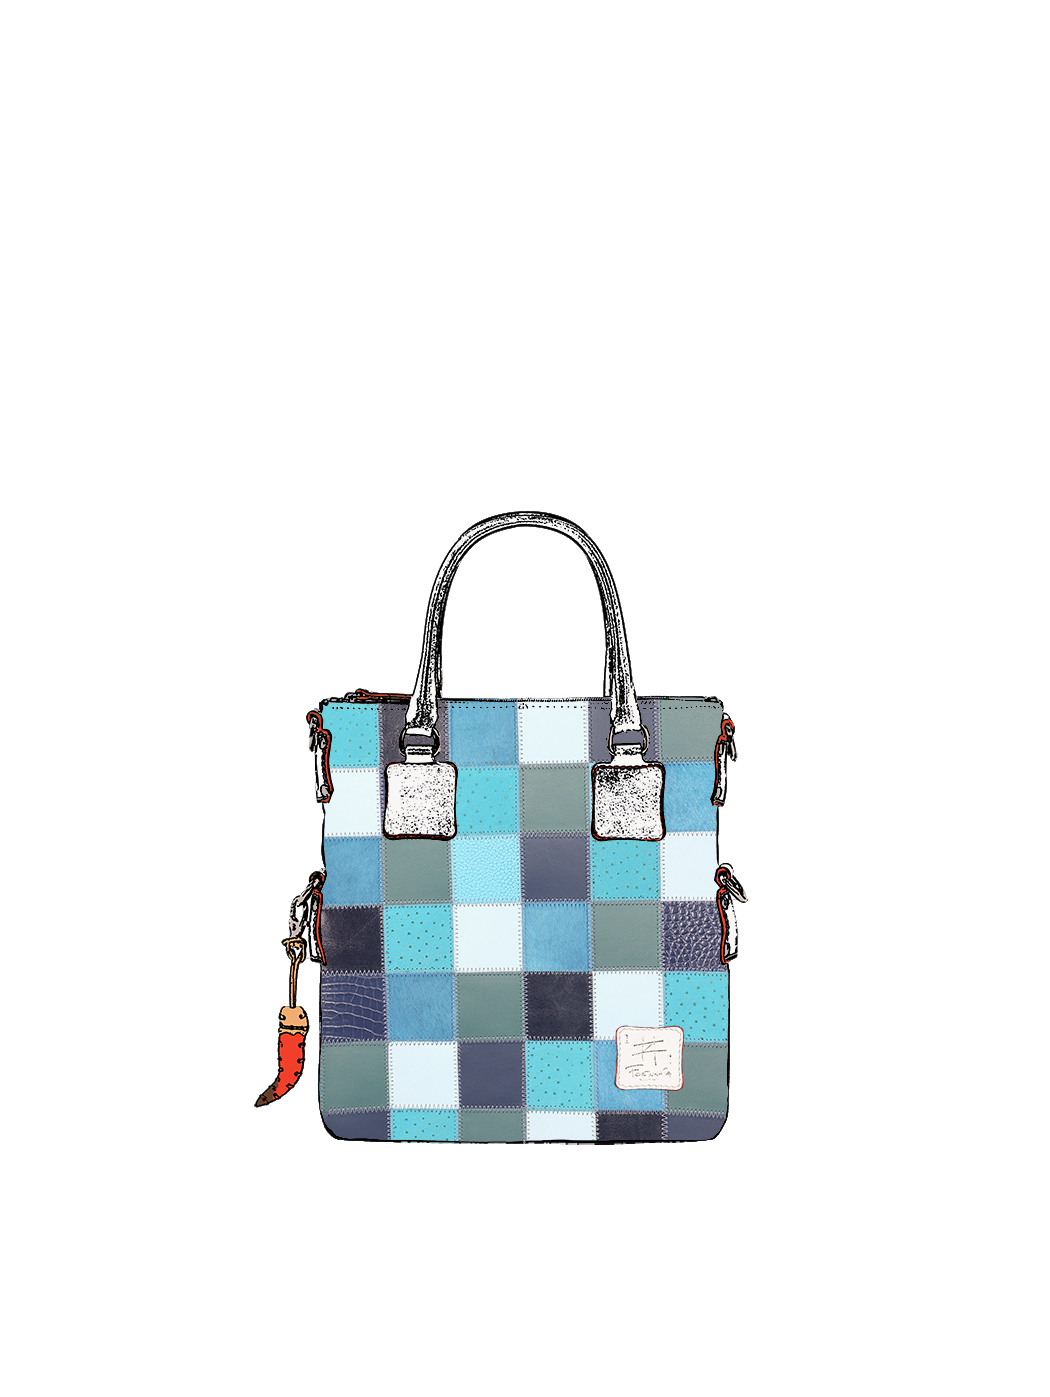 Дизайнерская мини - сумка из коллекции Fortunata в стиле пэчворк серо - голубого цвета